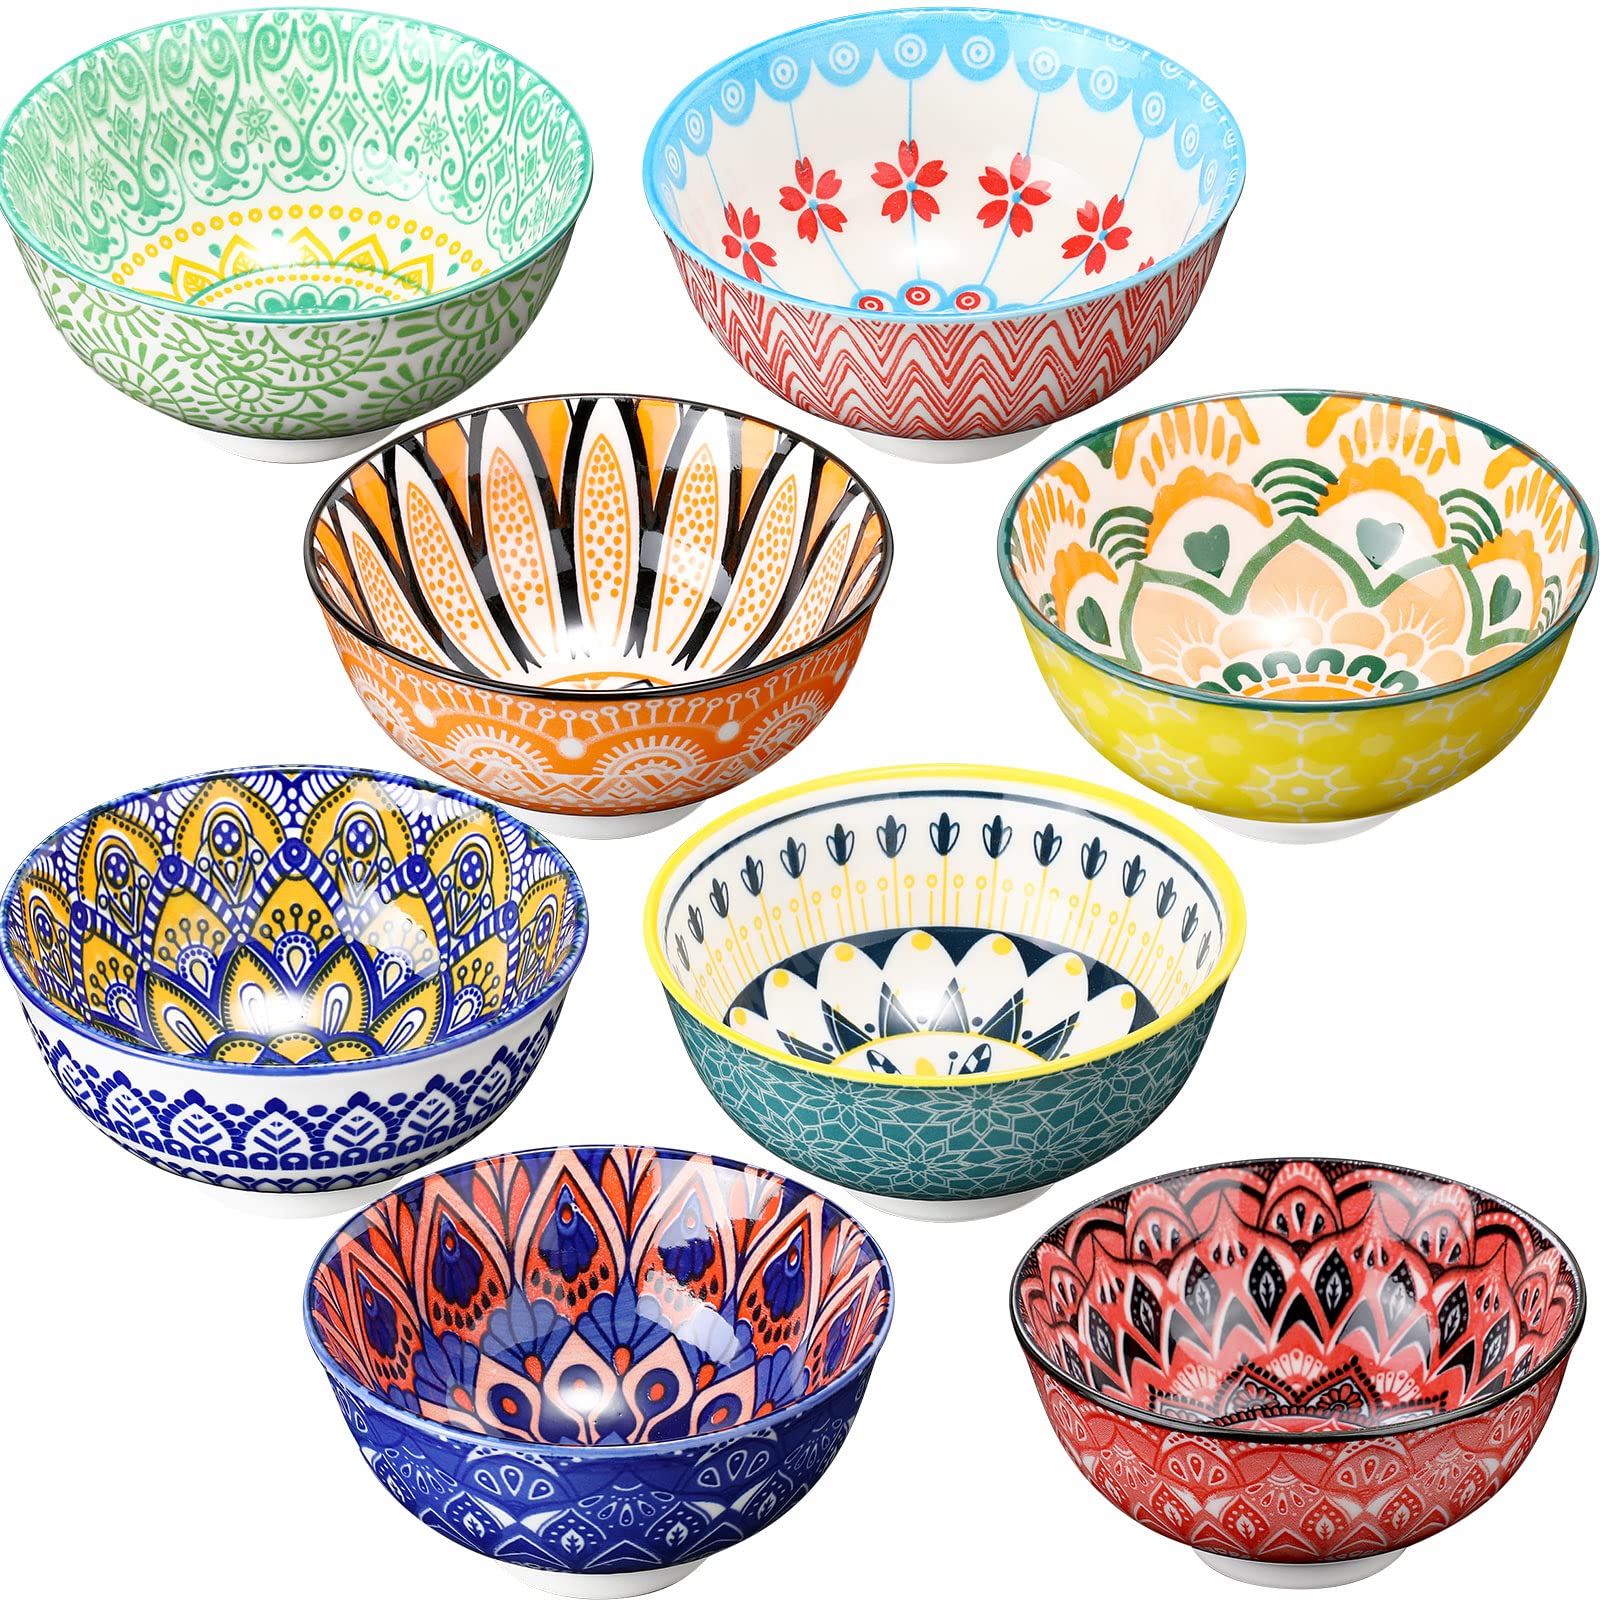 Censen 8 Pcs Colorful Ceramic Bowl Set 10 Oz Soup Cereal Bowls 4.75'' Porcelain Kitchen Serving Bowls for Ramen Rice Dessert Snack Salad Ice Cream Pasta Oatmeal Microwave and Dishwasher Safe (Vintage)